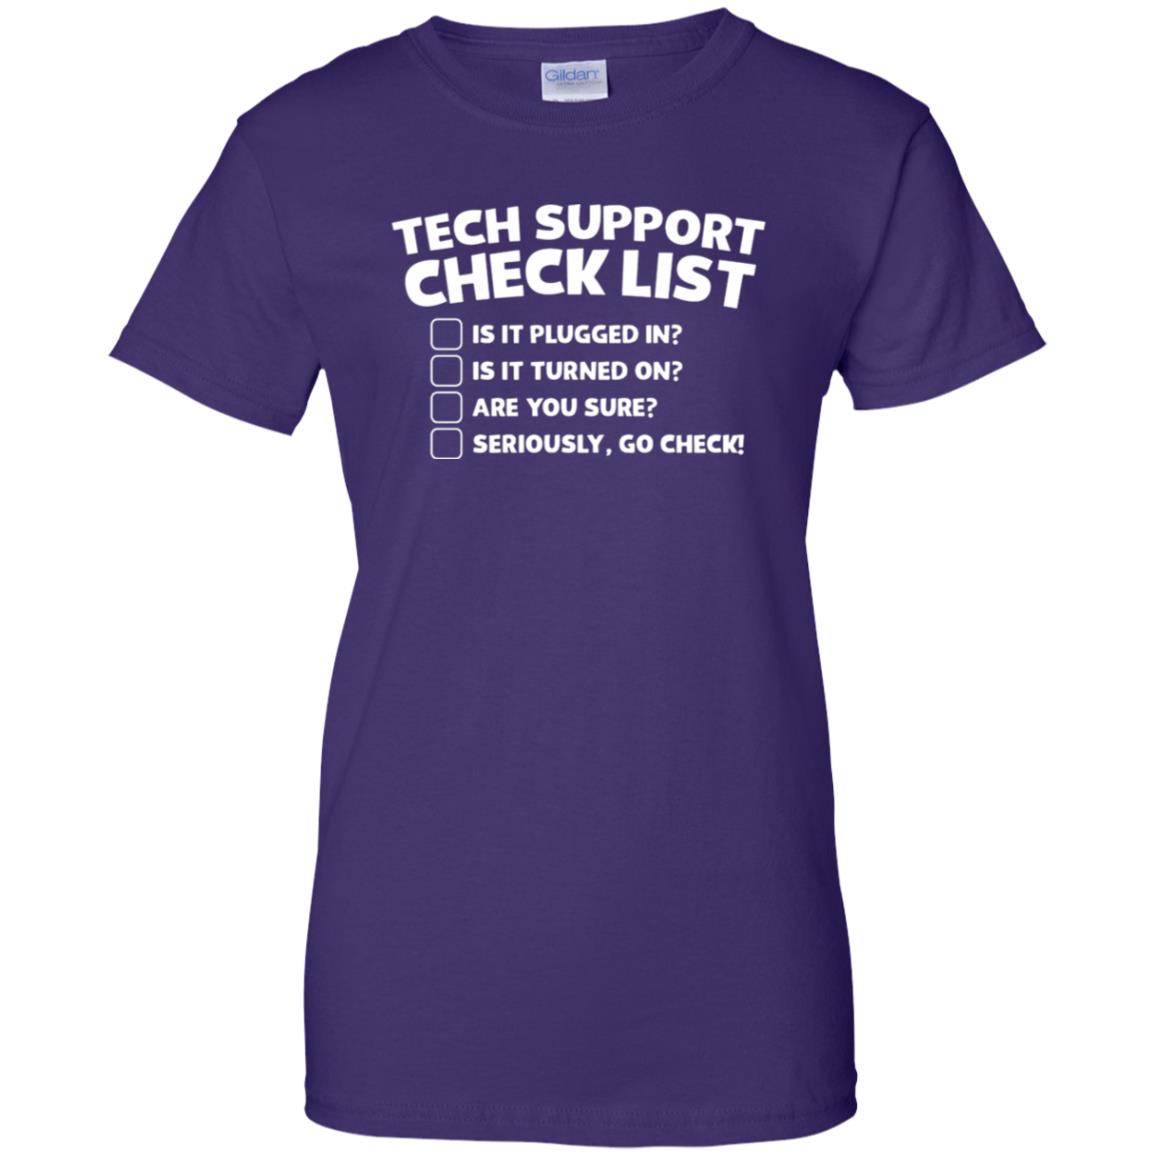 Tech Support Shirt - 10% Off - FavorMerch